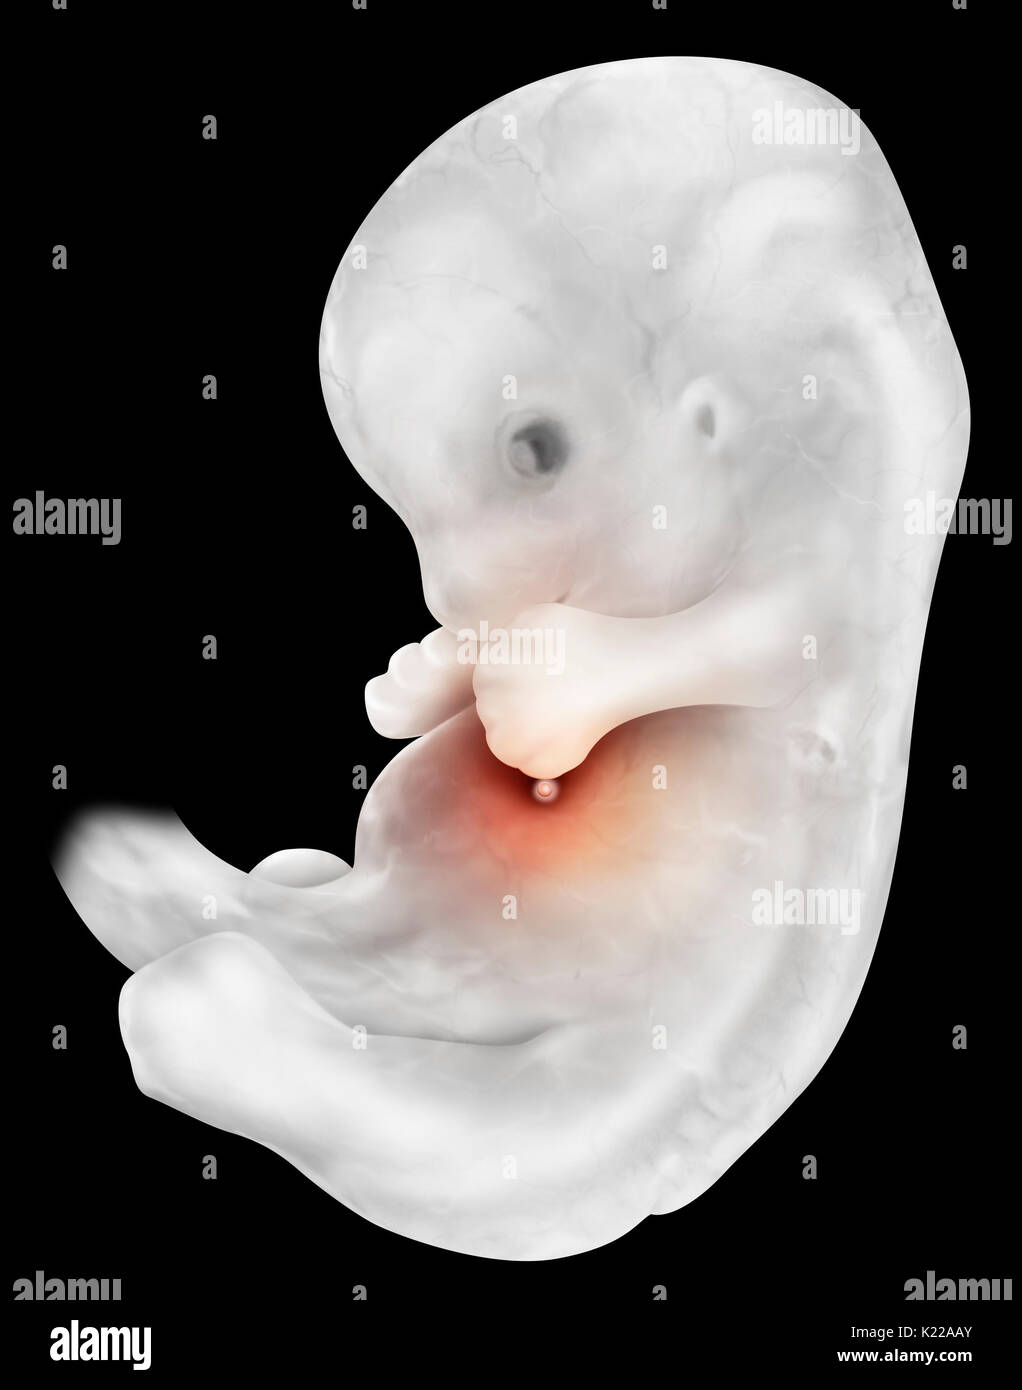 L'embryon de six semaines mesure presque 1⁄2 po (13 mm) et pèse environ 1,5 g. Ses membres sont déjà différenciées et son visage commence à avoir une apparence humaine. Banque D'Images